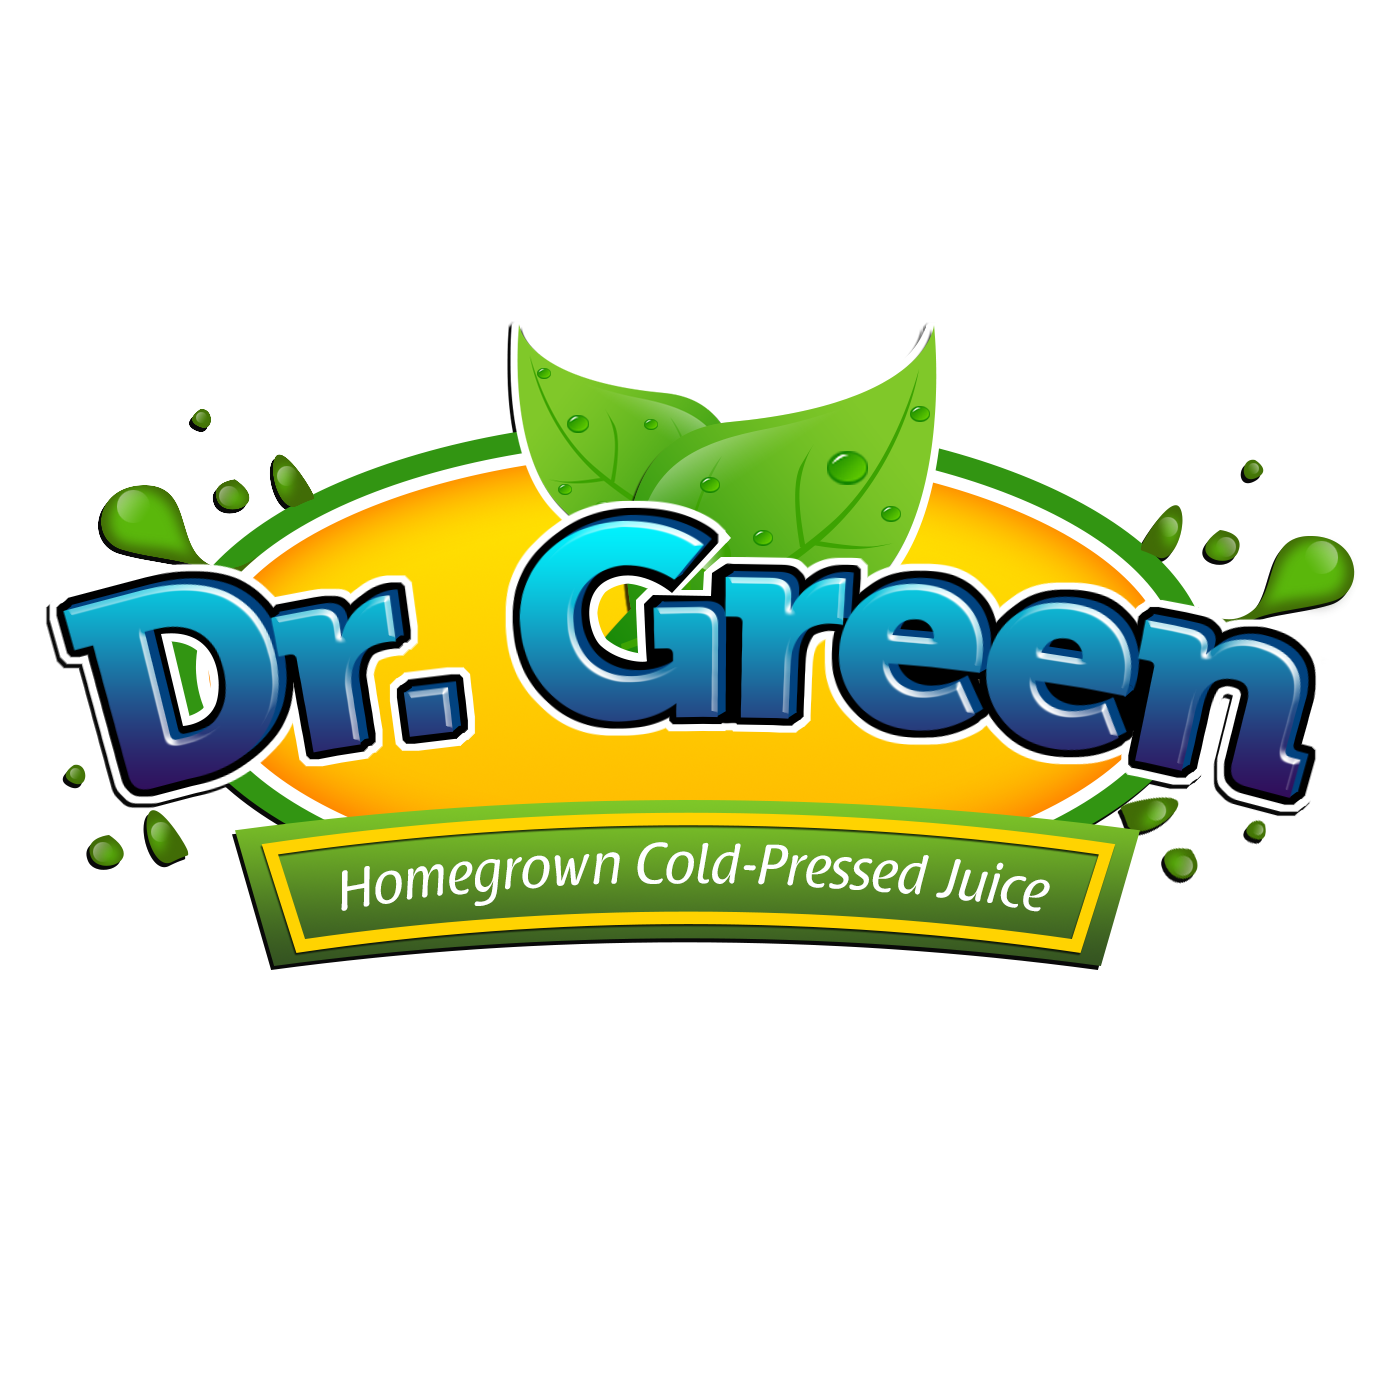 Dr. Green Cold Pressed Juice Jakarta